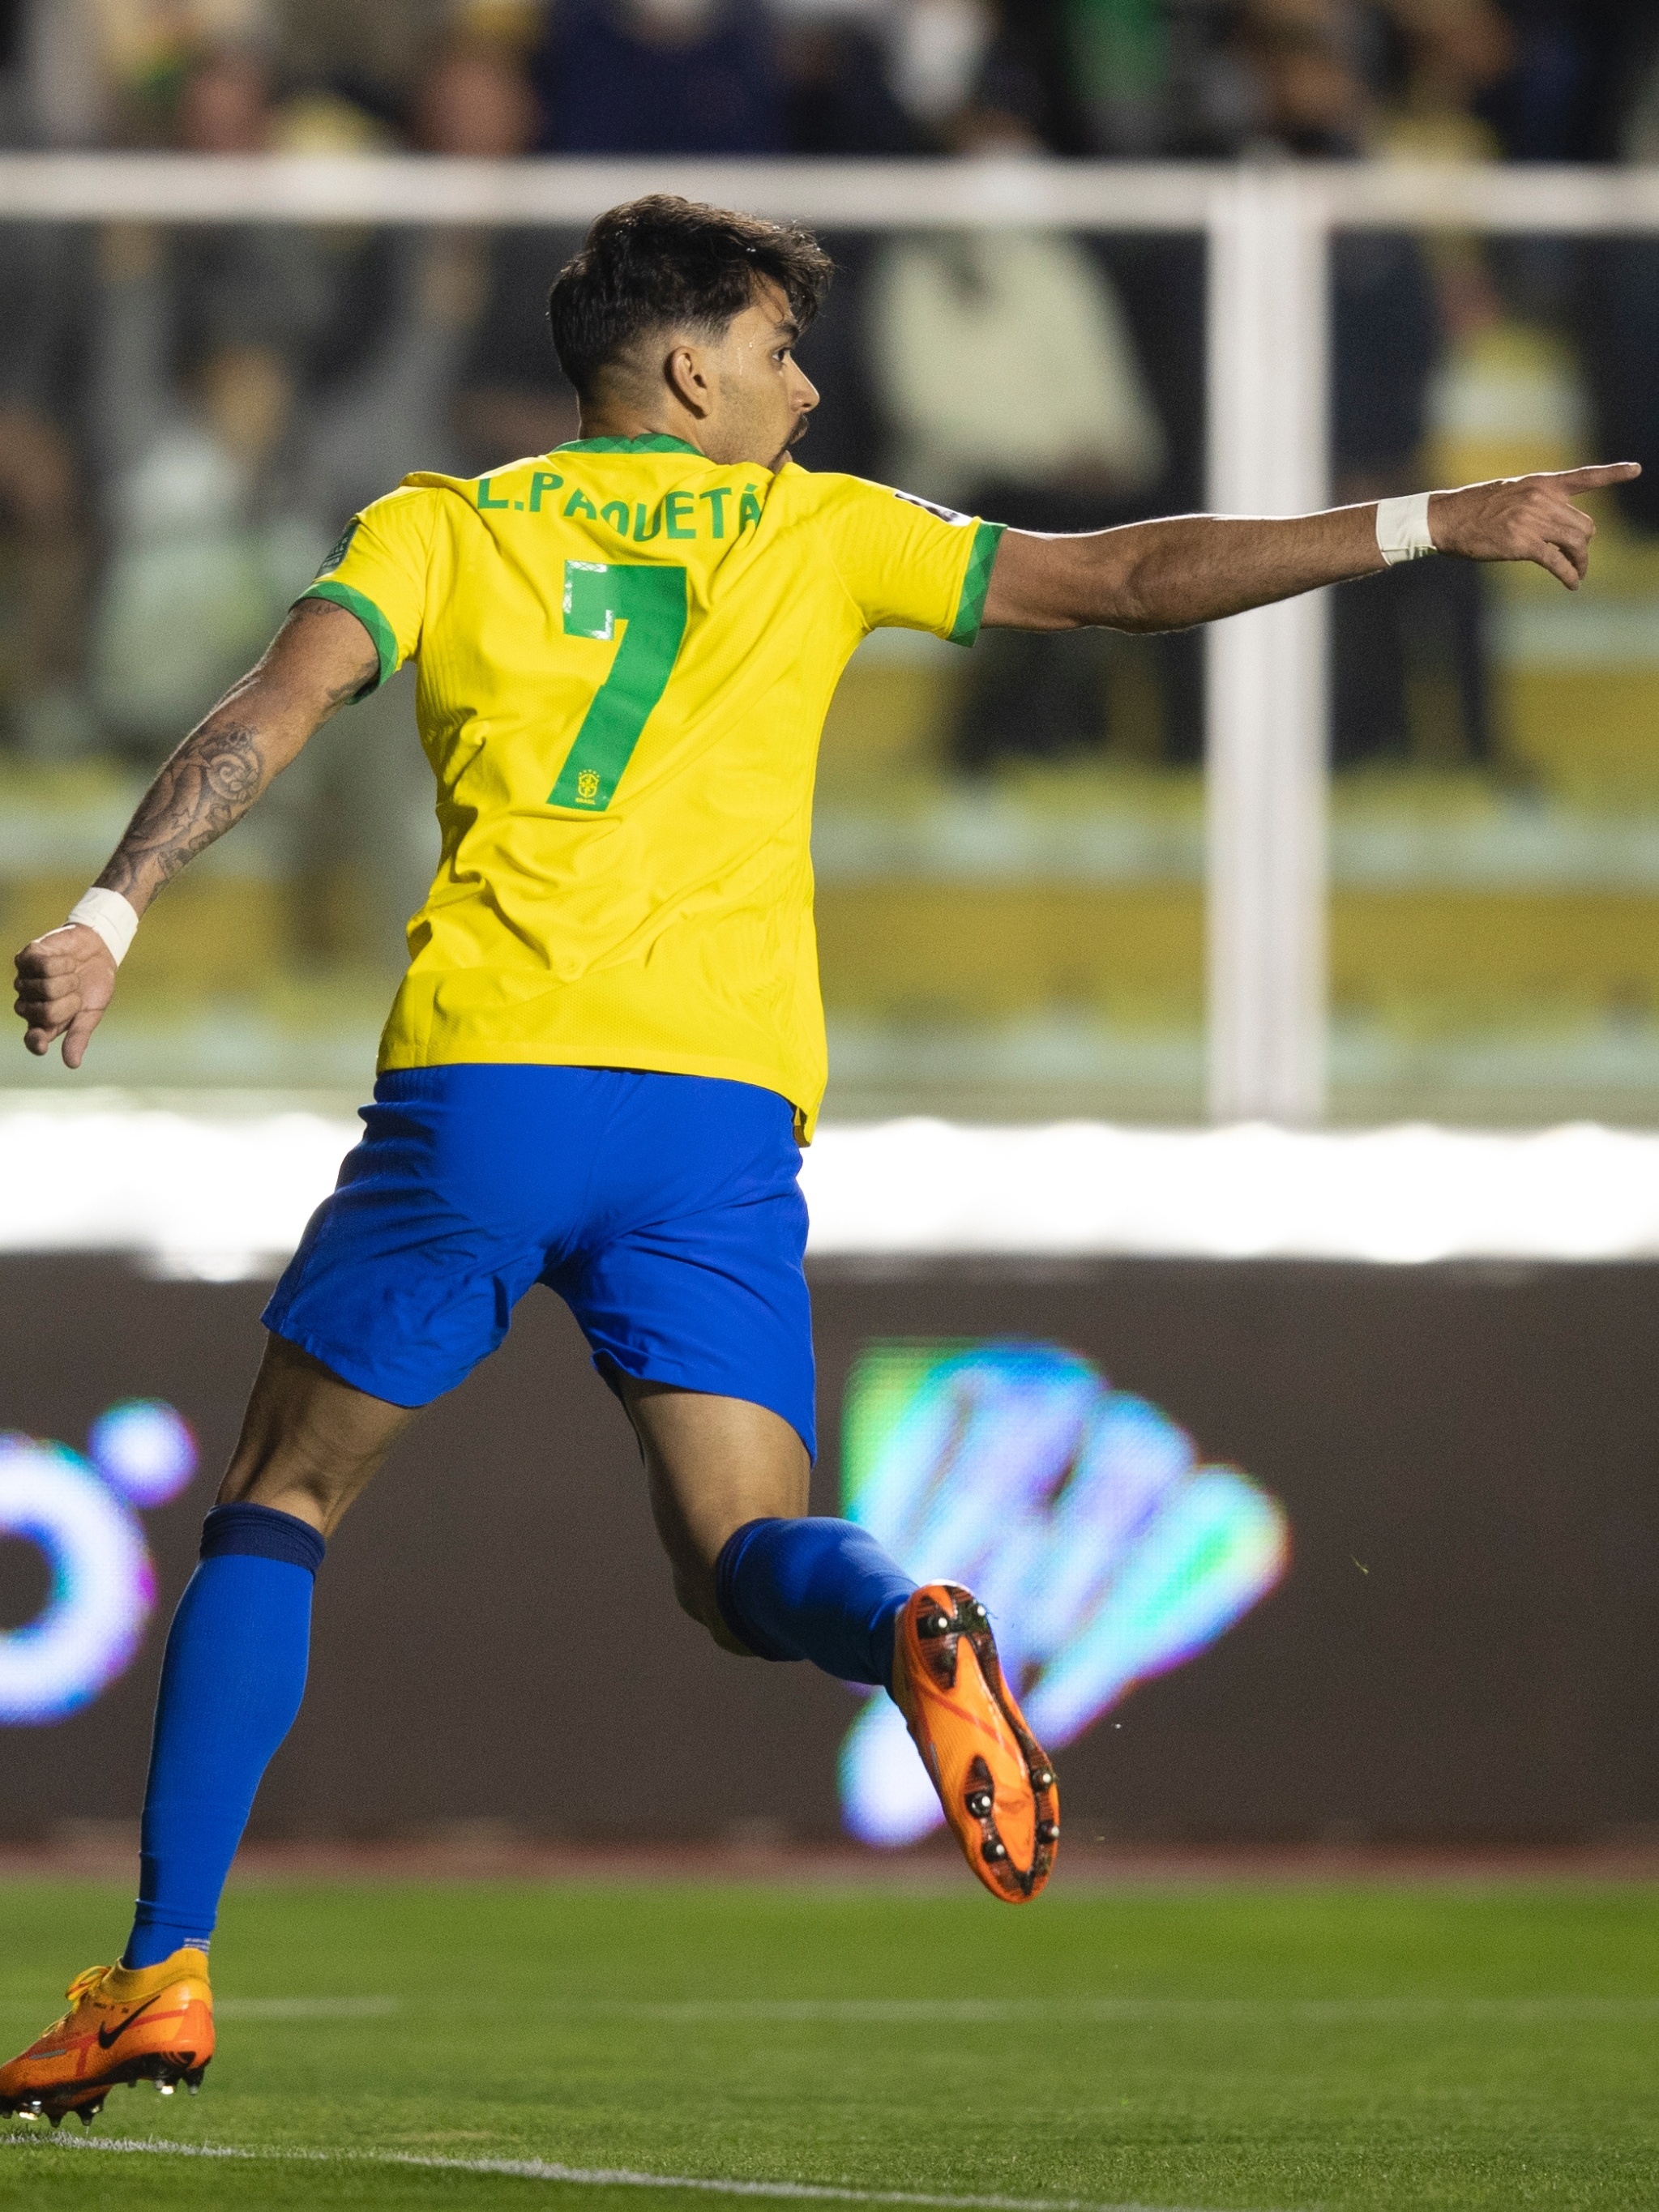 Eliminatórias: como foram os últimos jogos entre Brasil e Bolívia?